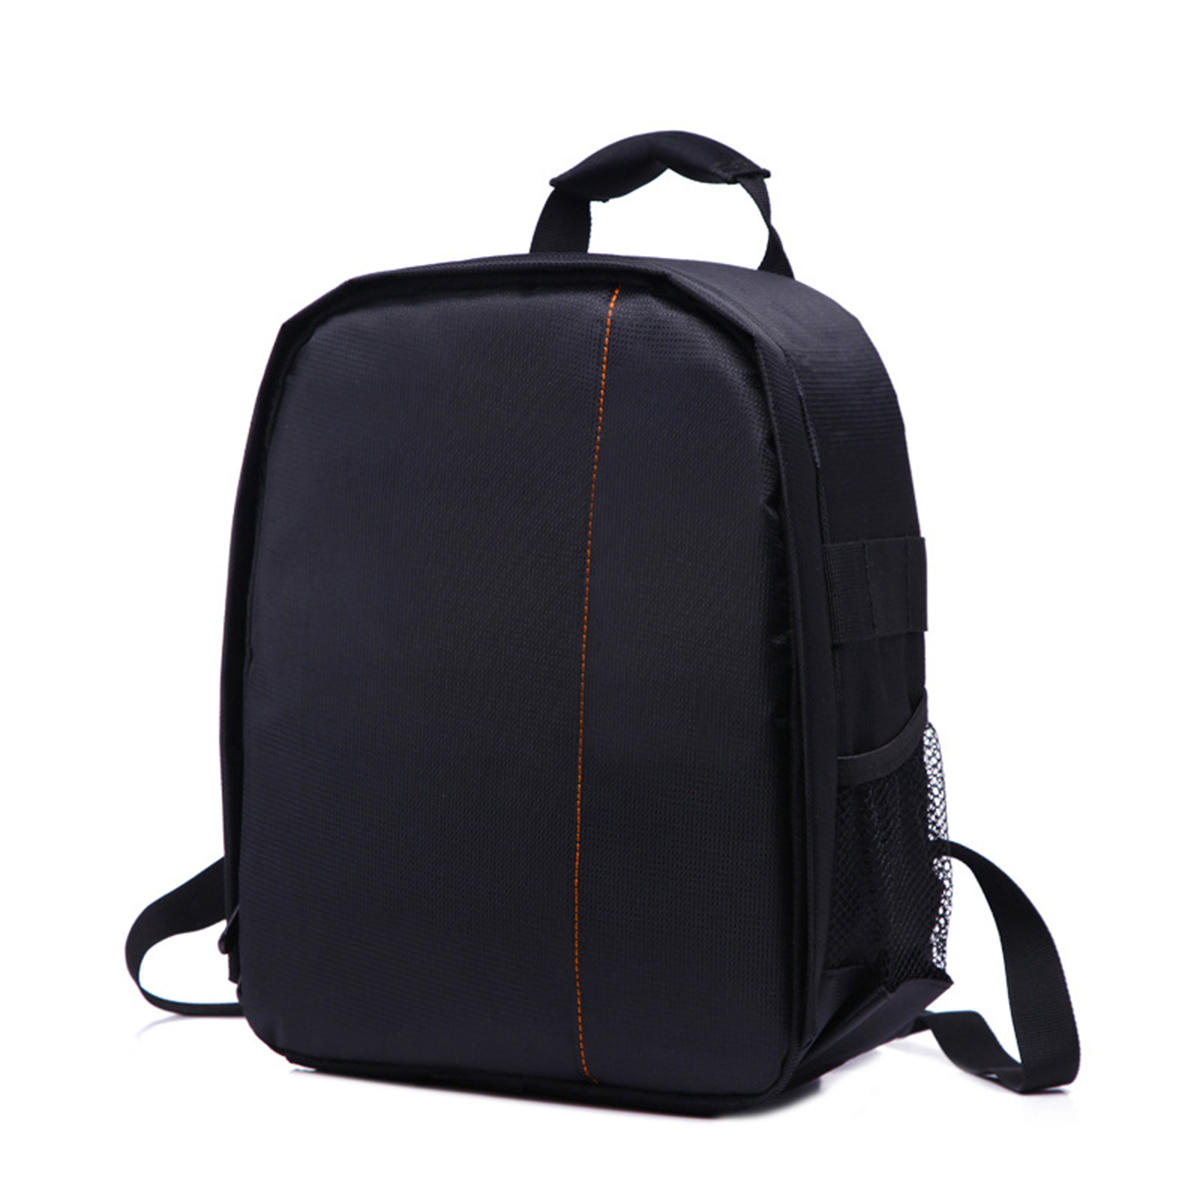 

DSLR Camera Lens Storage Backpack Water-resistant Case Bag with Padded Bag